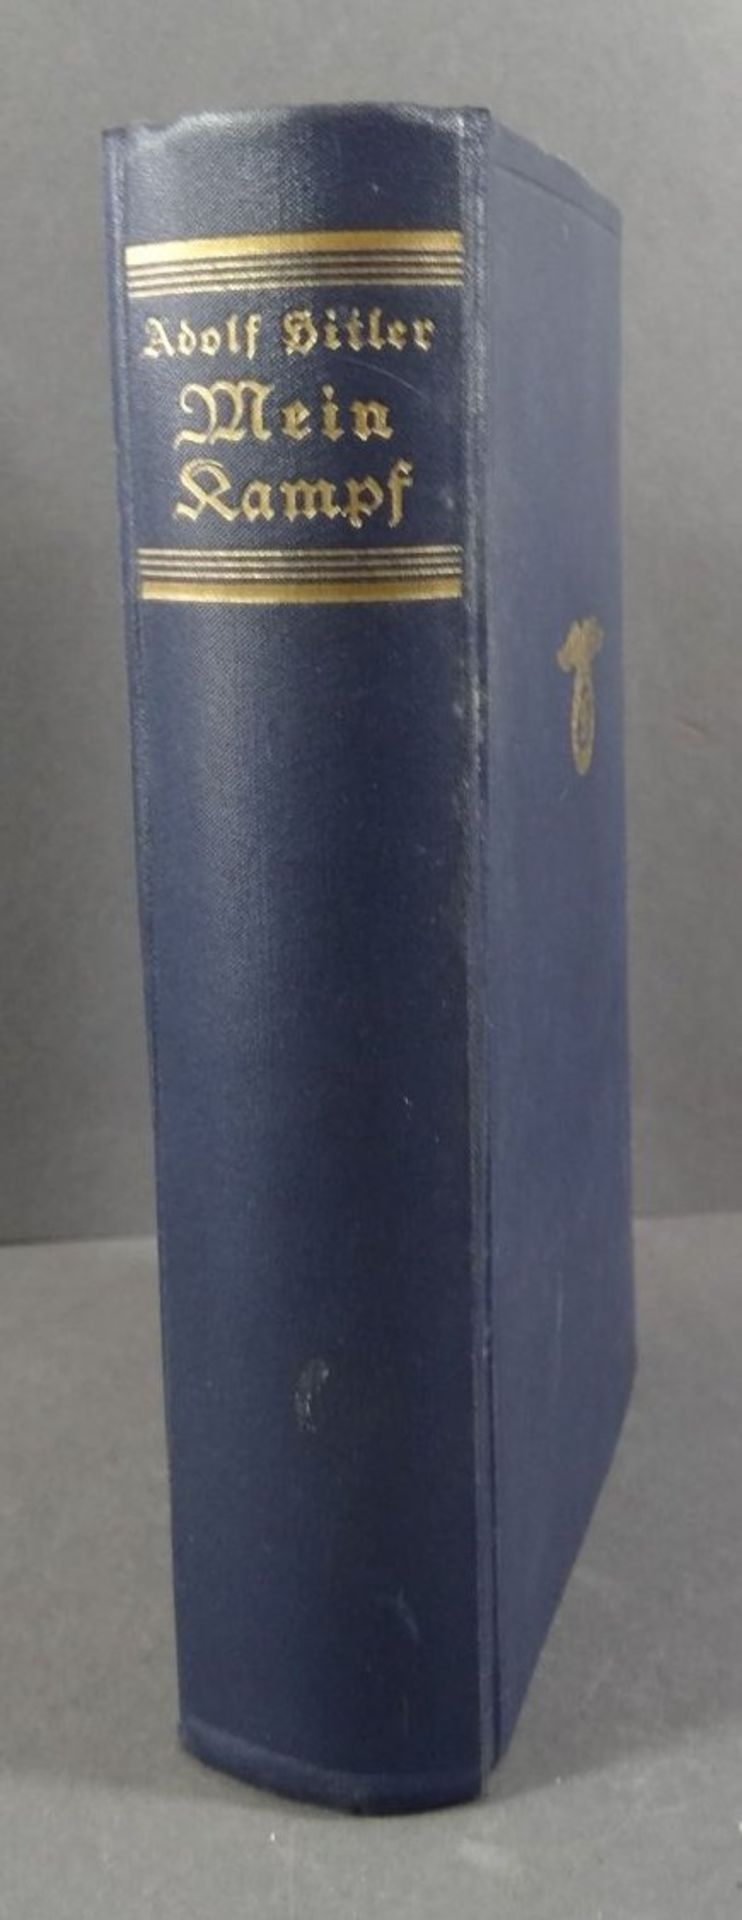 A.Hitler "Mein Kampf" 1933, blaue Ausgabe, gut erhalten, mehrfach gestempelt "preuss. Amtsgericht Z